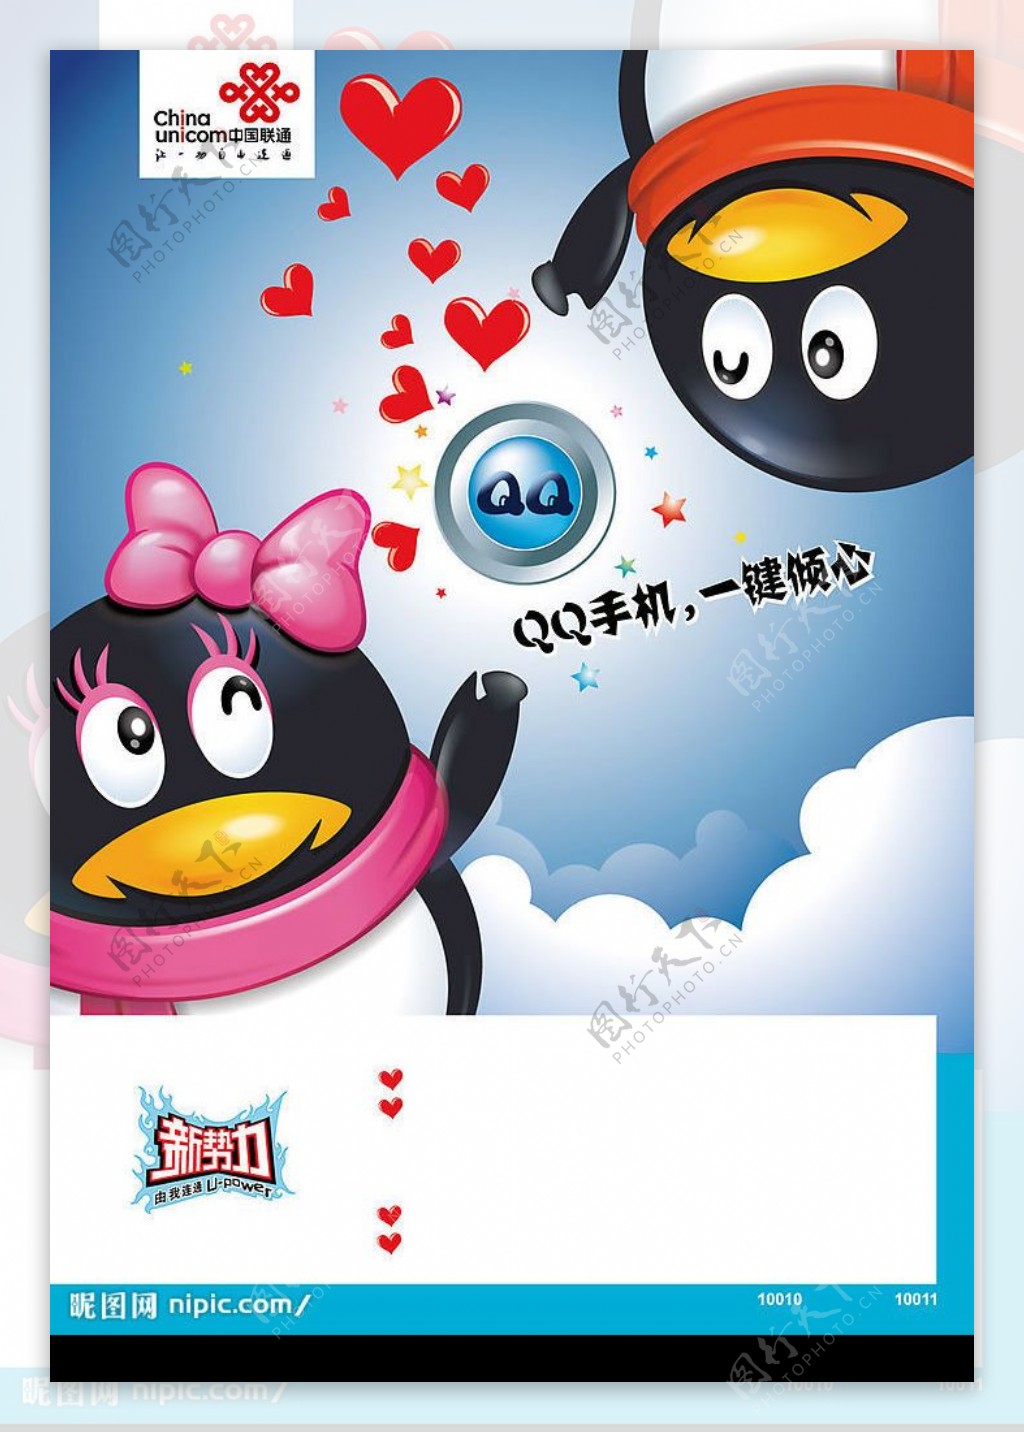 中国联通宣传海报图片